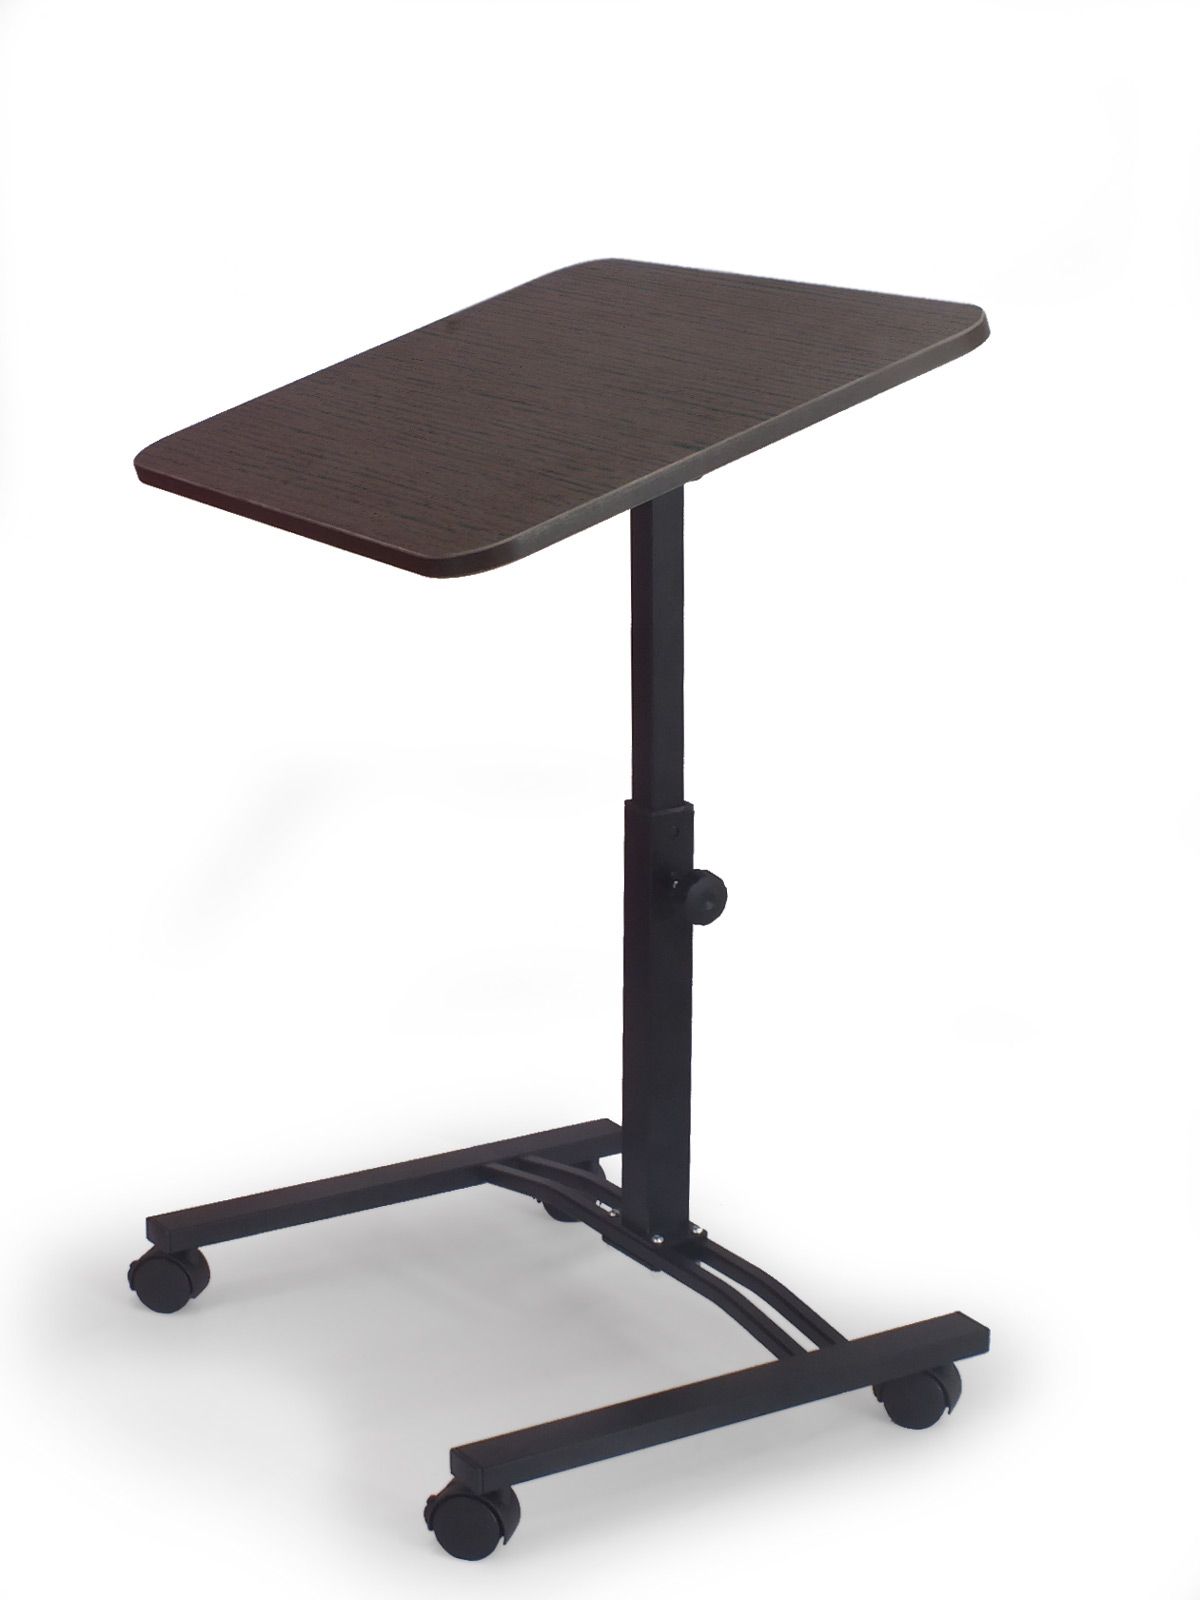 Складной стол для ноутбука «Твист» на колесиках с регулировкой высоты и угла наклона